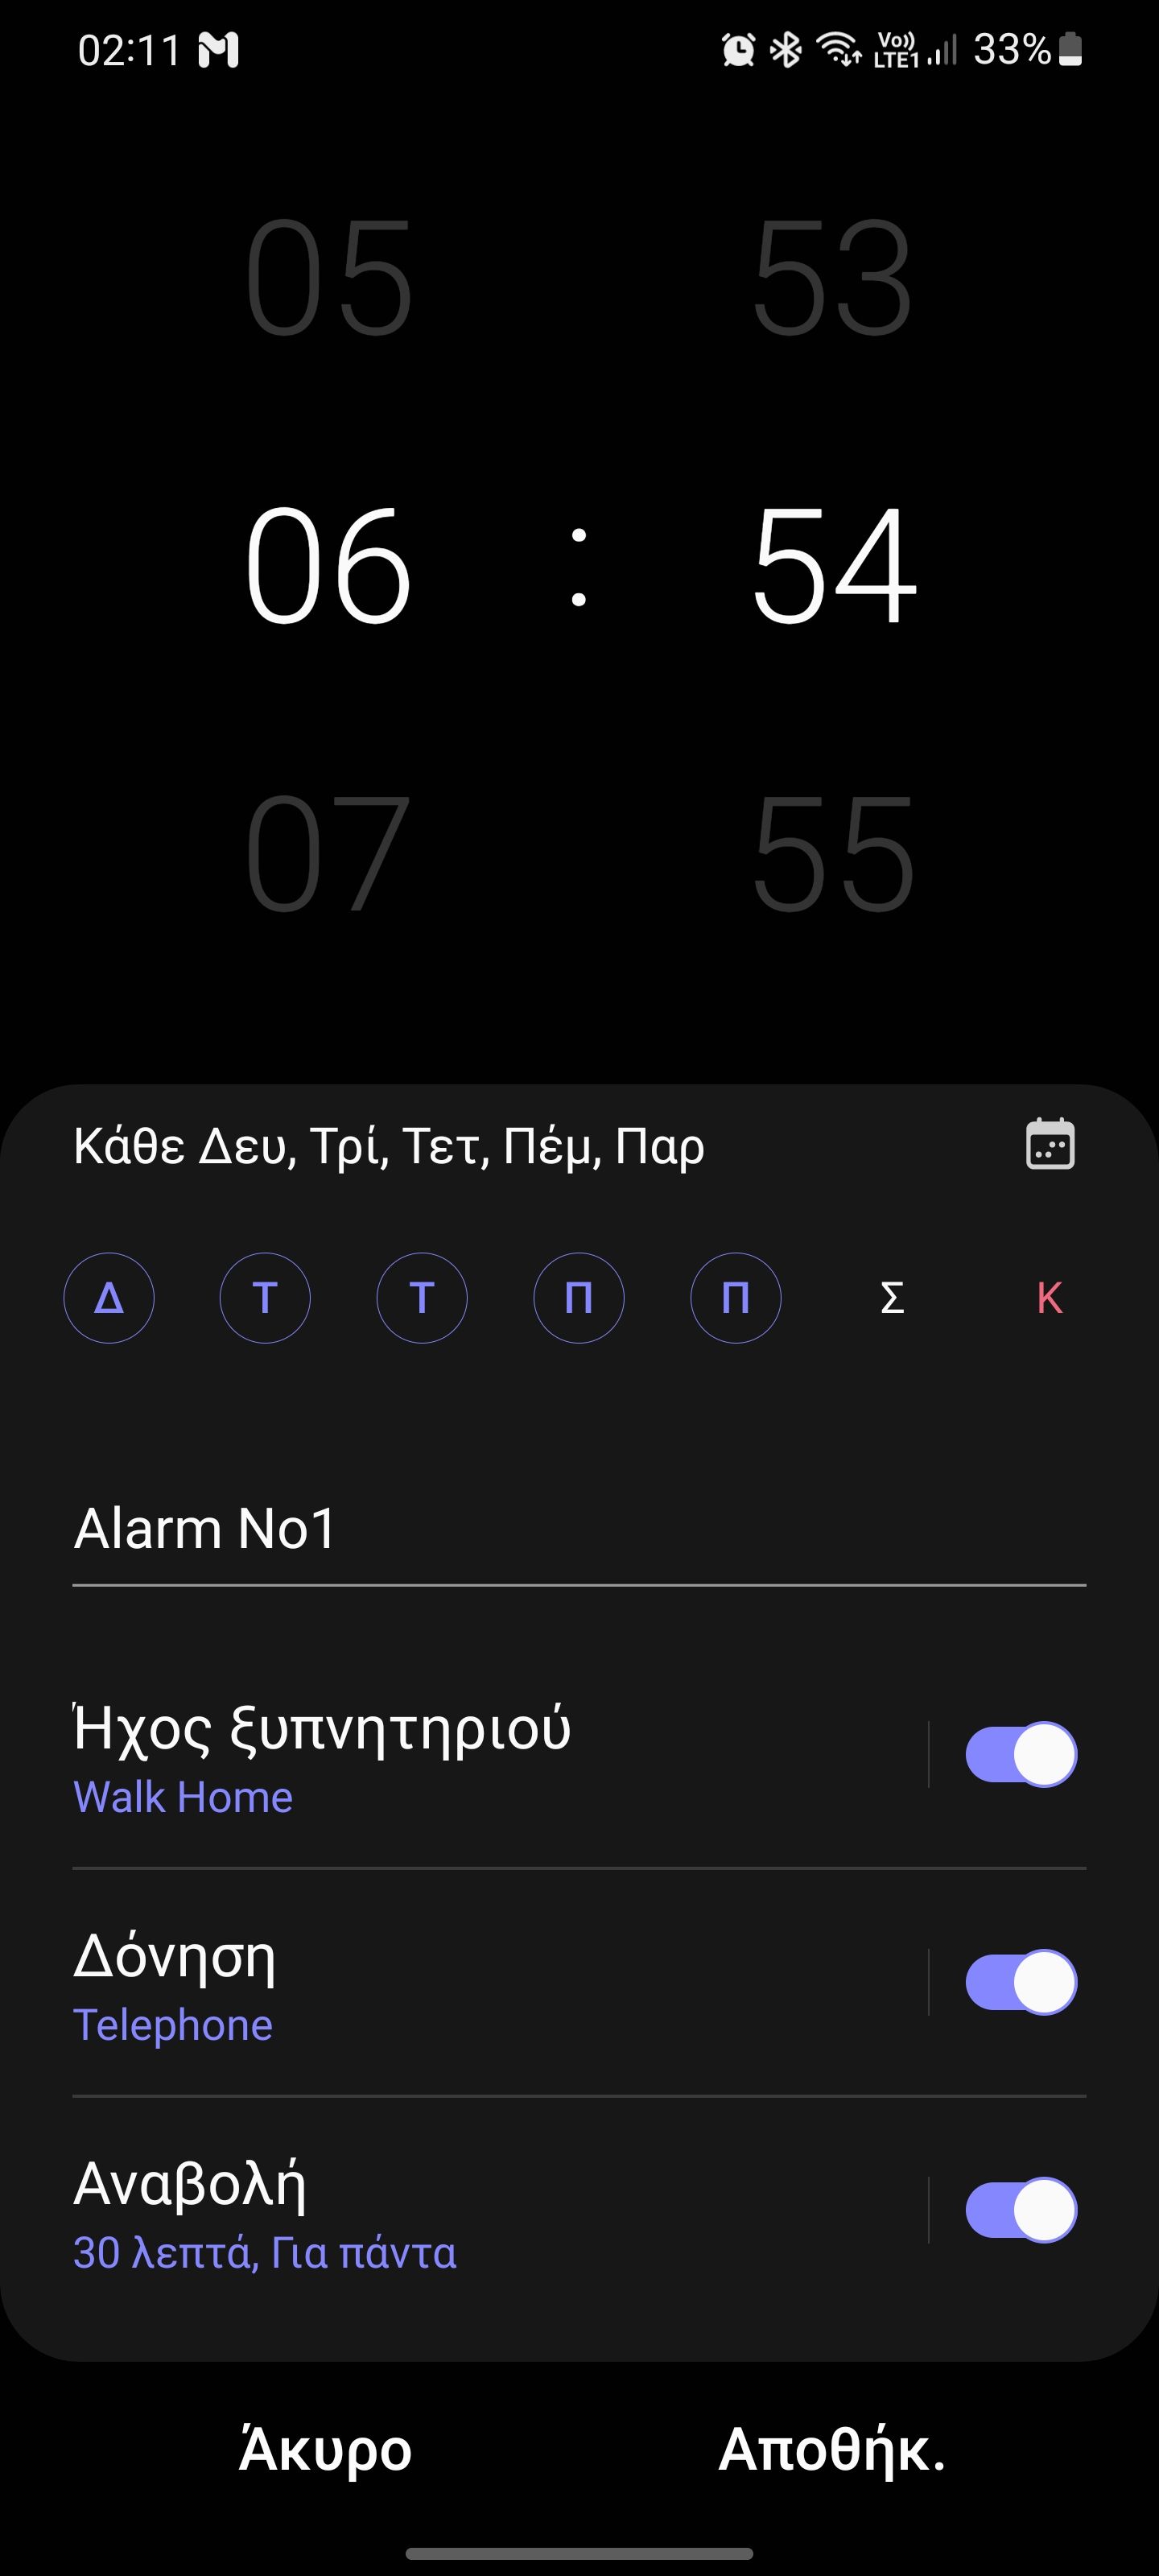 Ξυπνητήρι ⏰️ - Samsung Community